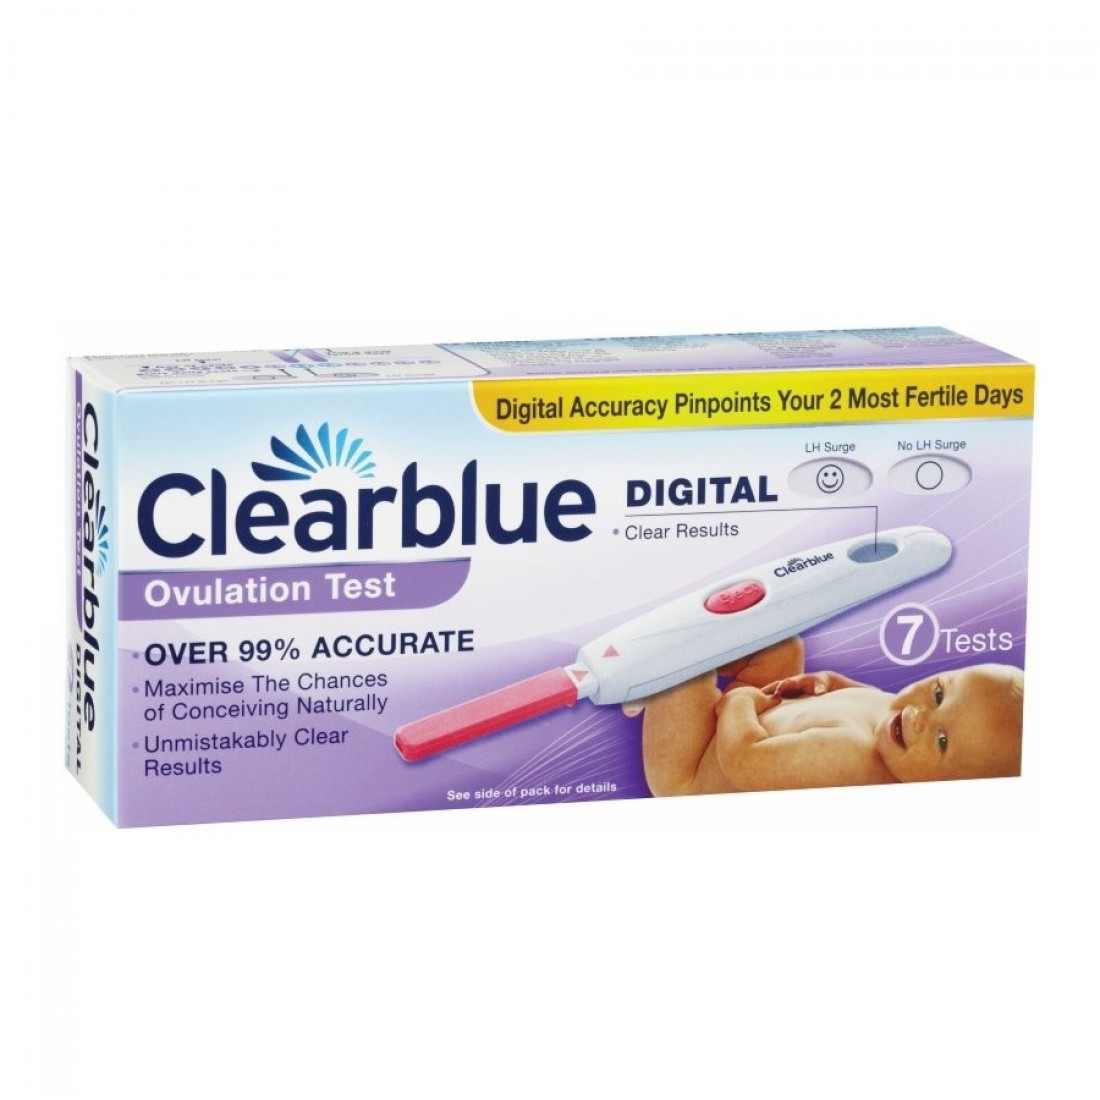 Clearblue digital для определения срока беременности. Тест на овуляцию Clearblue. Тест Clearblue для определения овуляции. Clearblue овуляция. Электронный тест на овуляцию Clearblue.